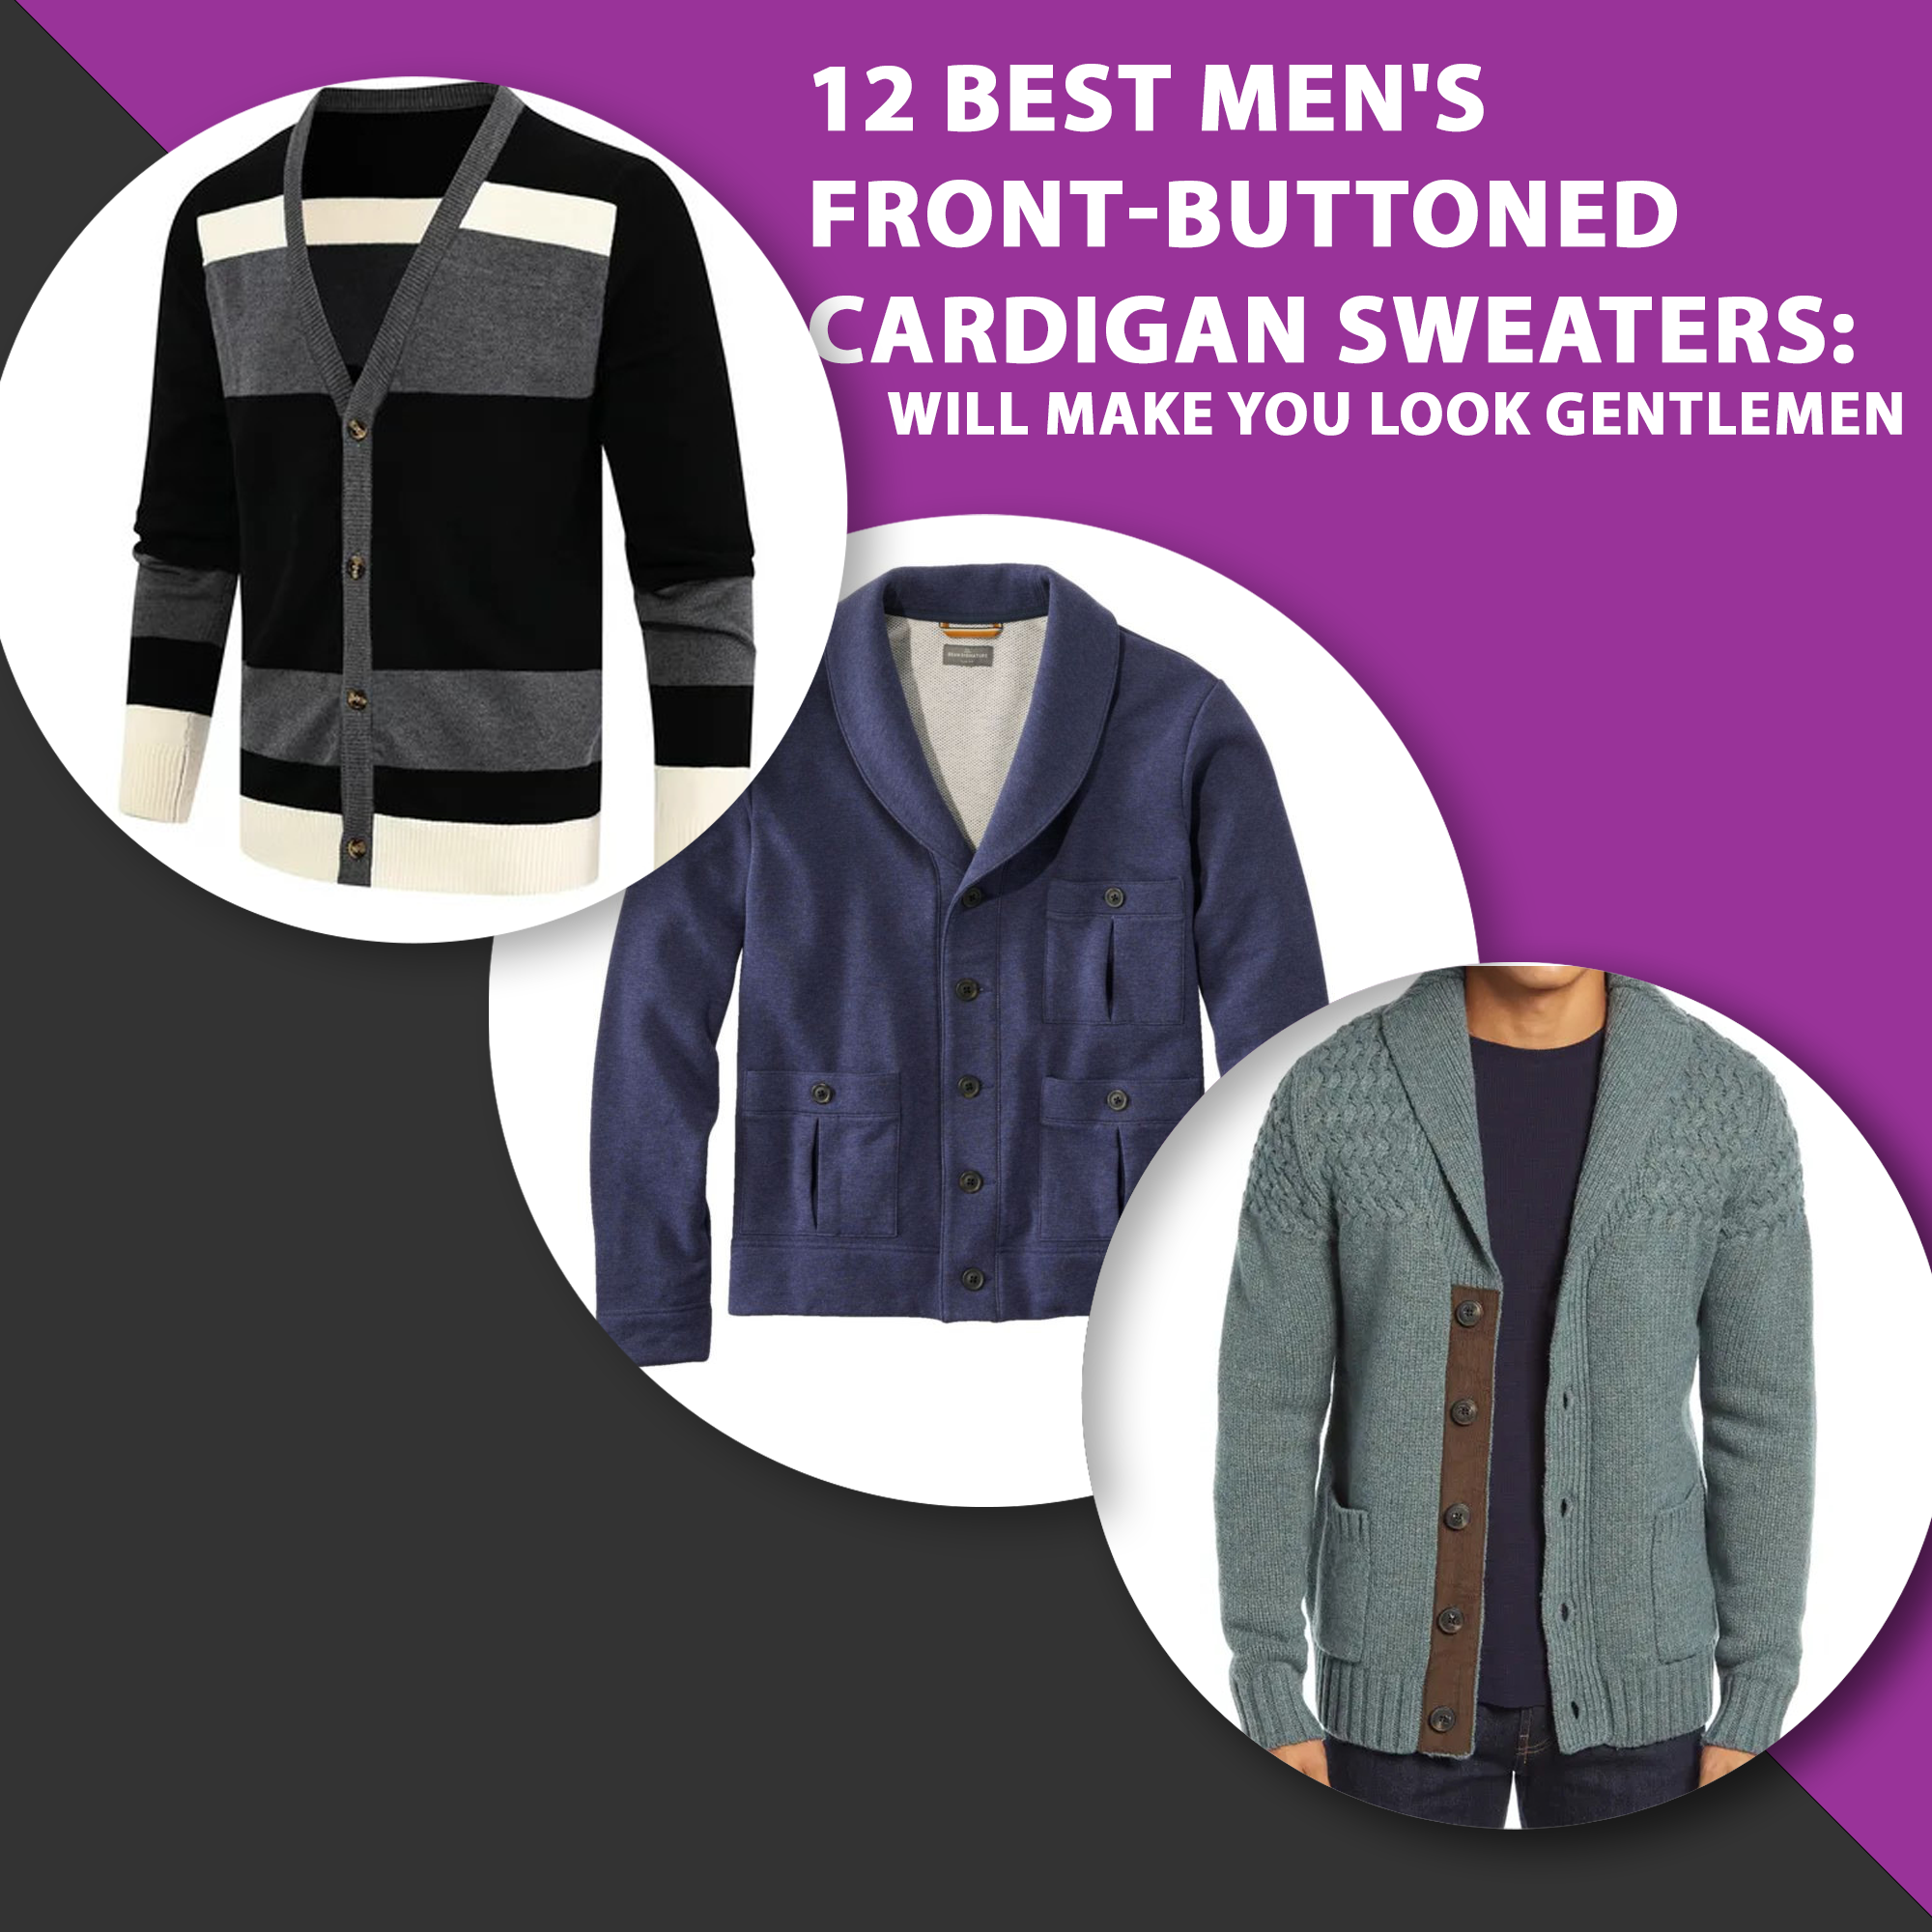 12 Best Men’s Front-Buttoned Cardigan Sweaters: Will Make You Look Gentlemen